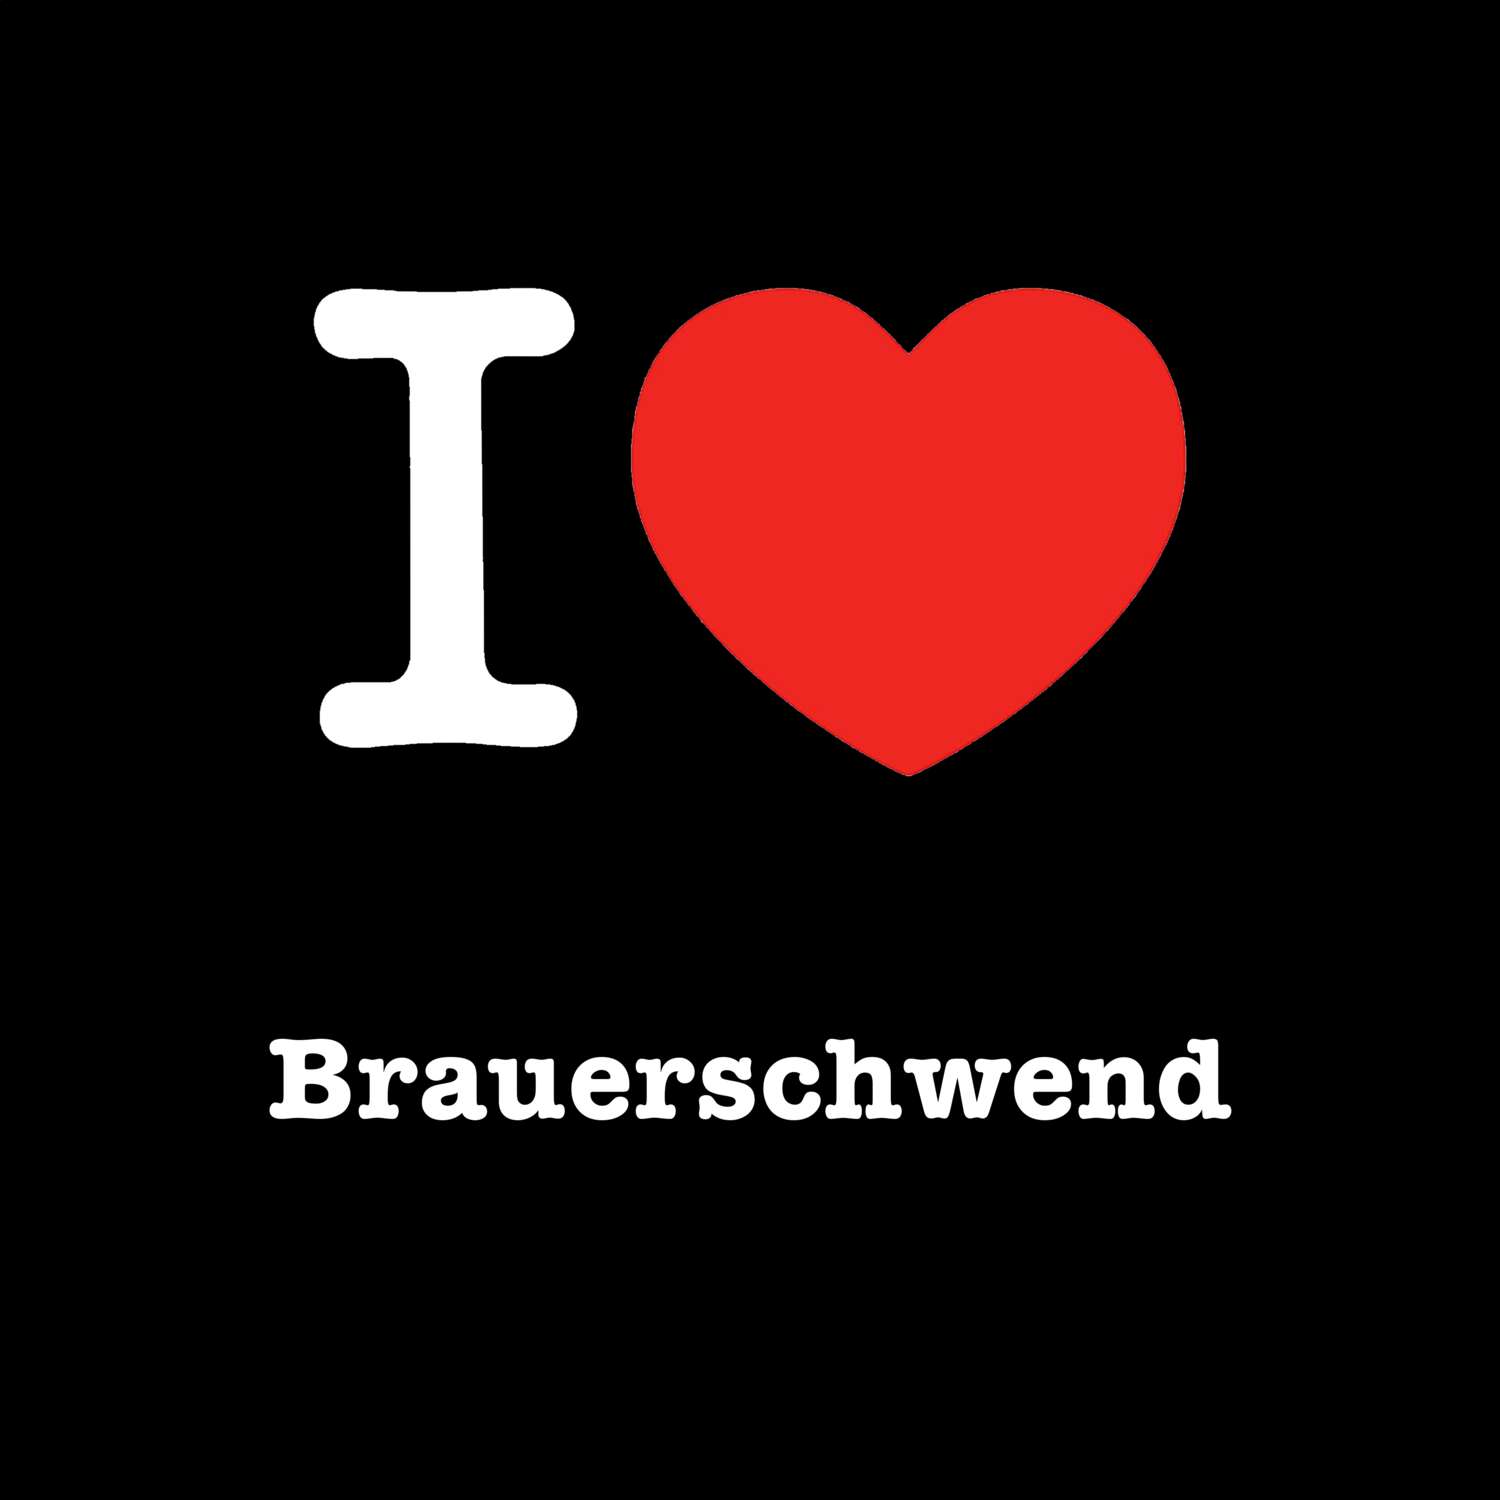 Brauerschwend T-Shirt »I love«